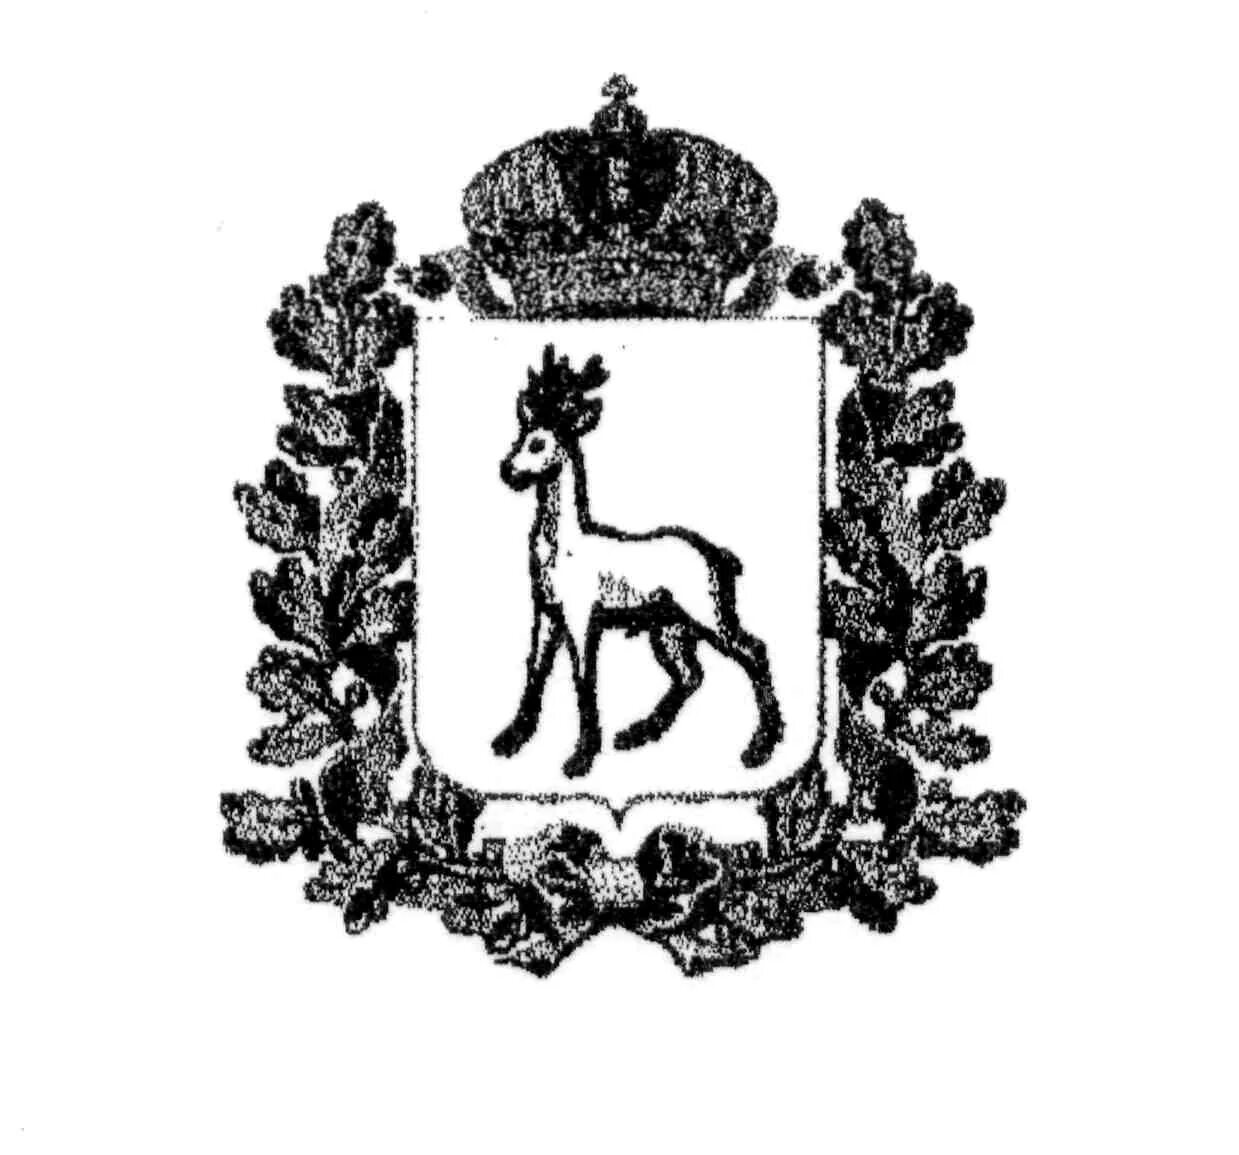 герб самарской области фото